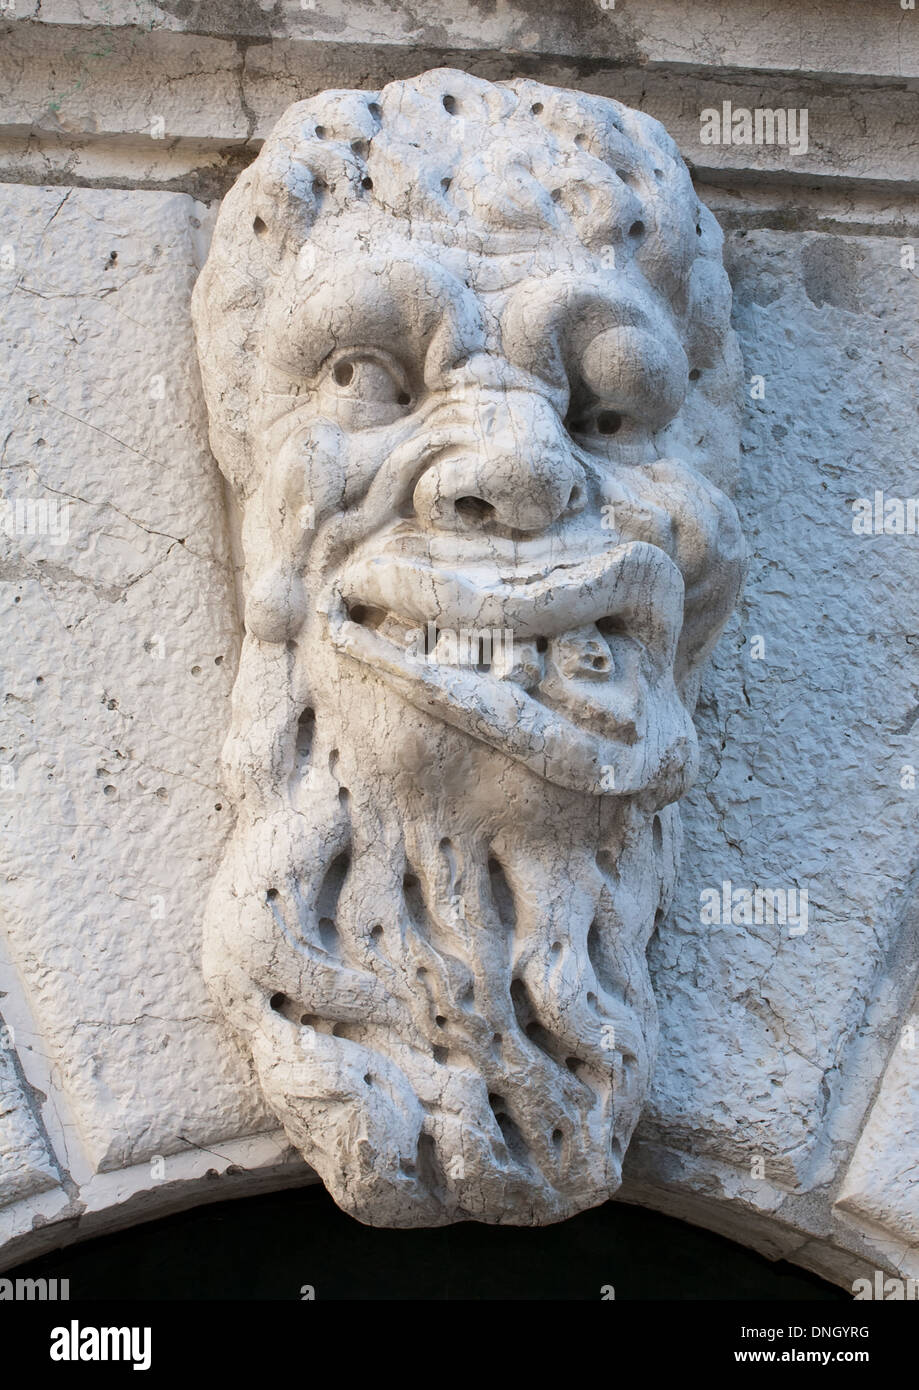 ugly man bas-relief stone face on Santa Maria Formosa Church facade, Venice, Italy Stock Photo